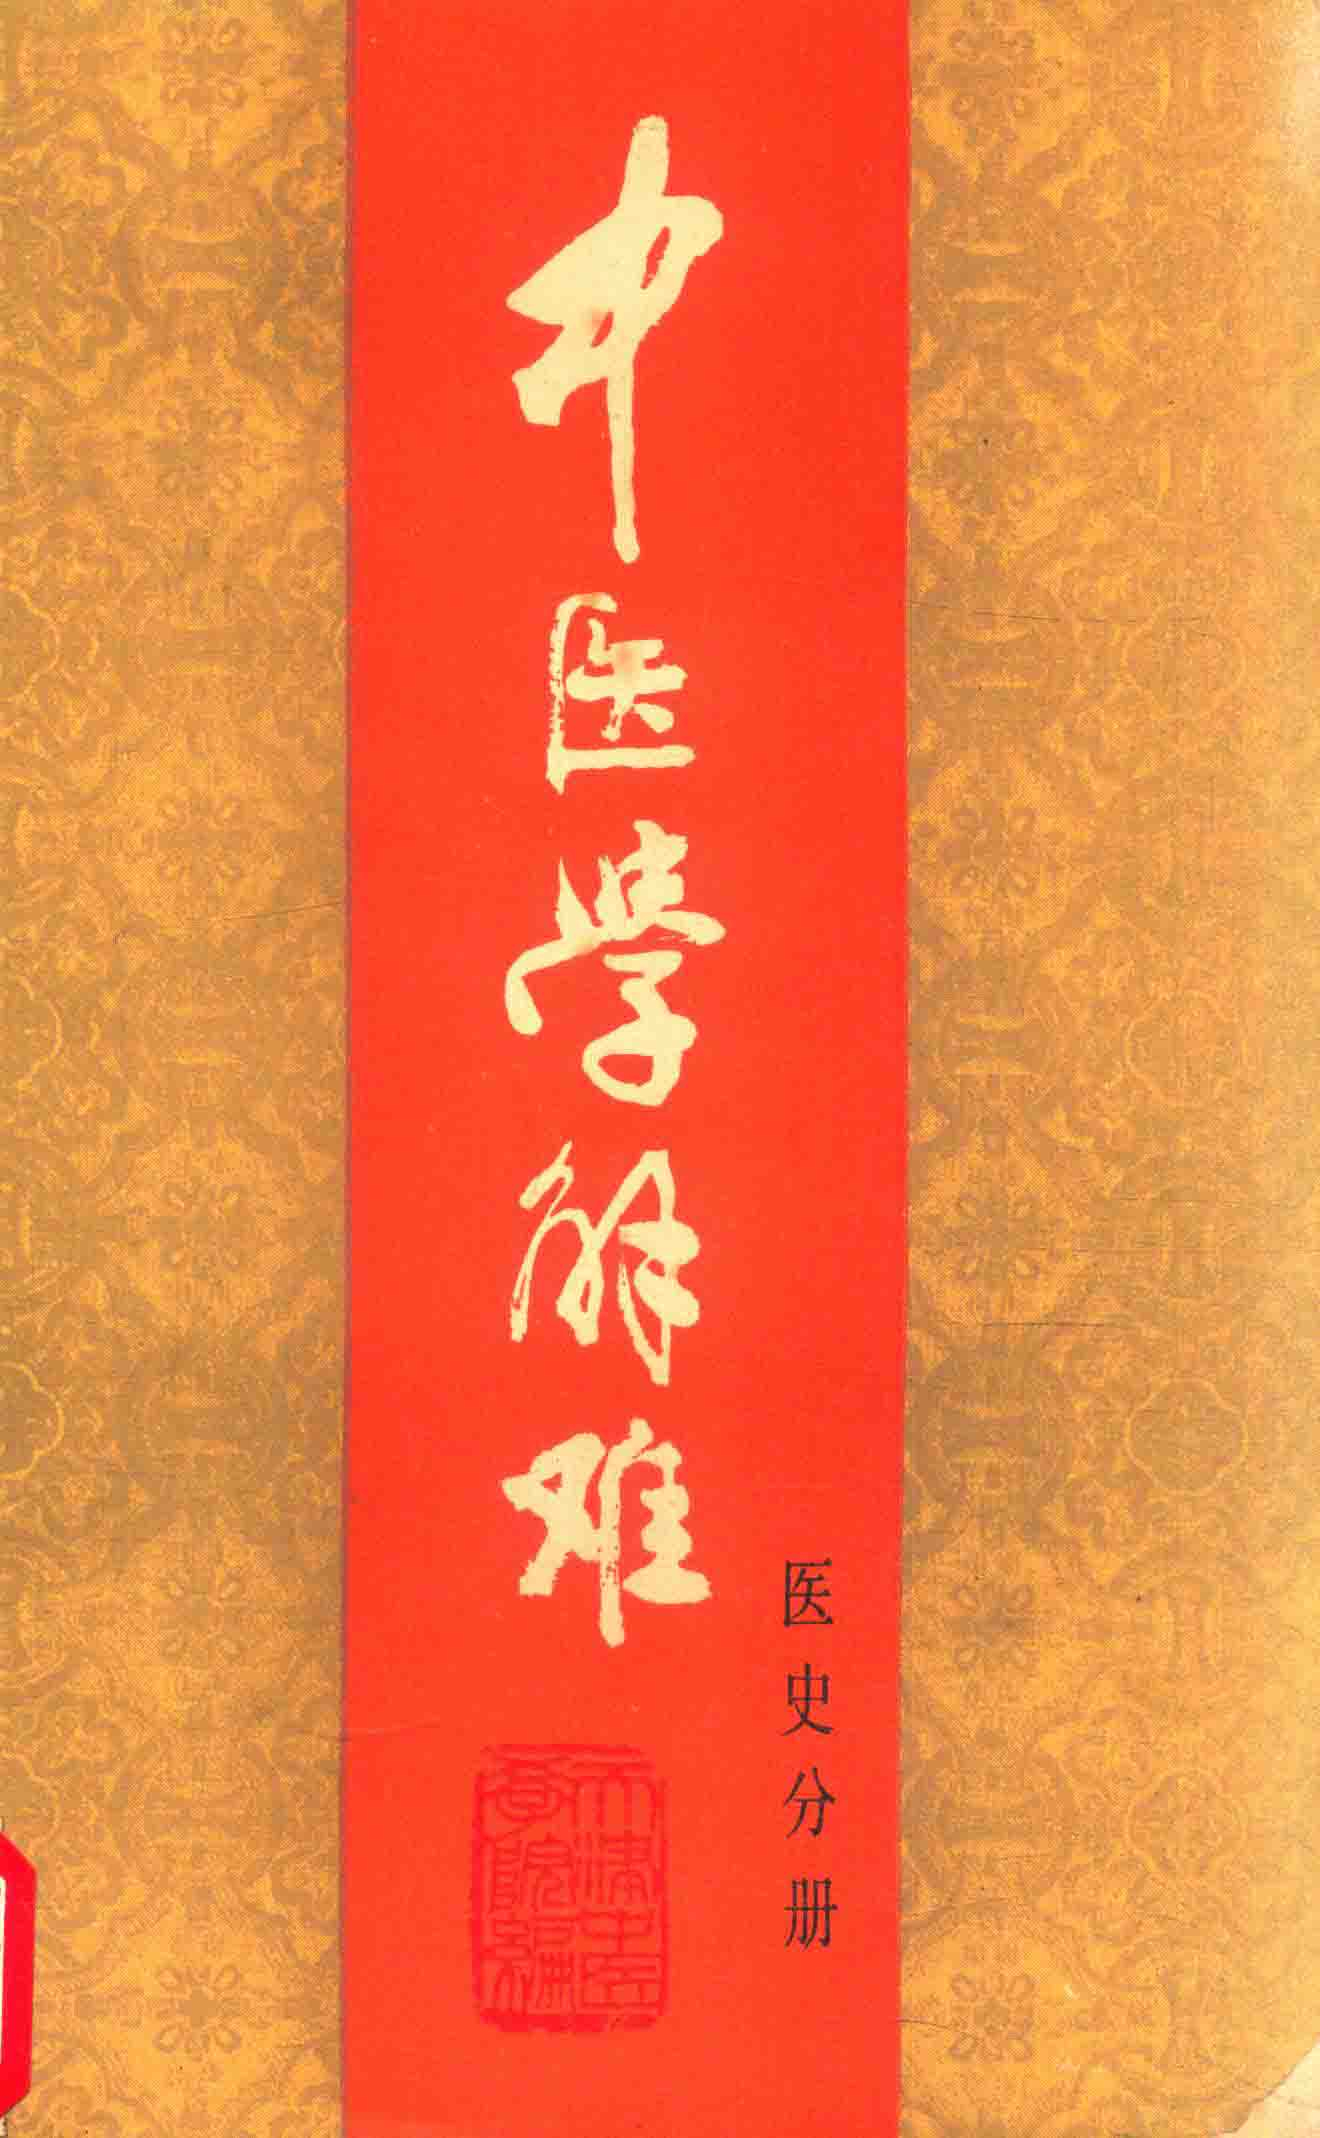 电子书- 中医学解难(全16册) 天津中医学院编天津科学技术出版社1986年 